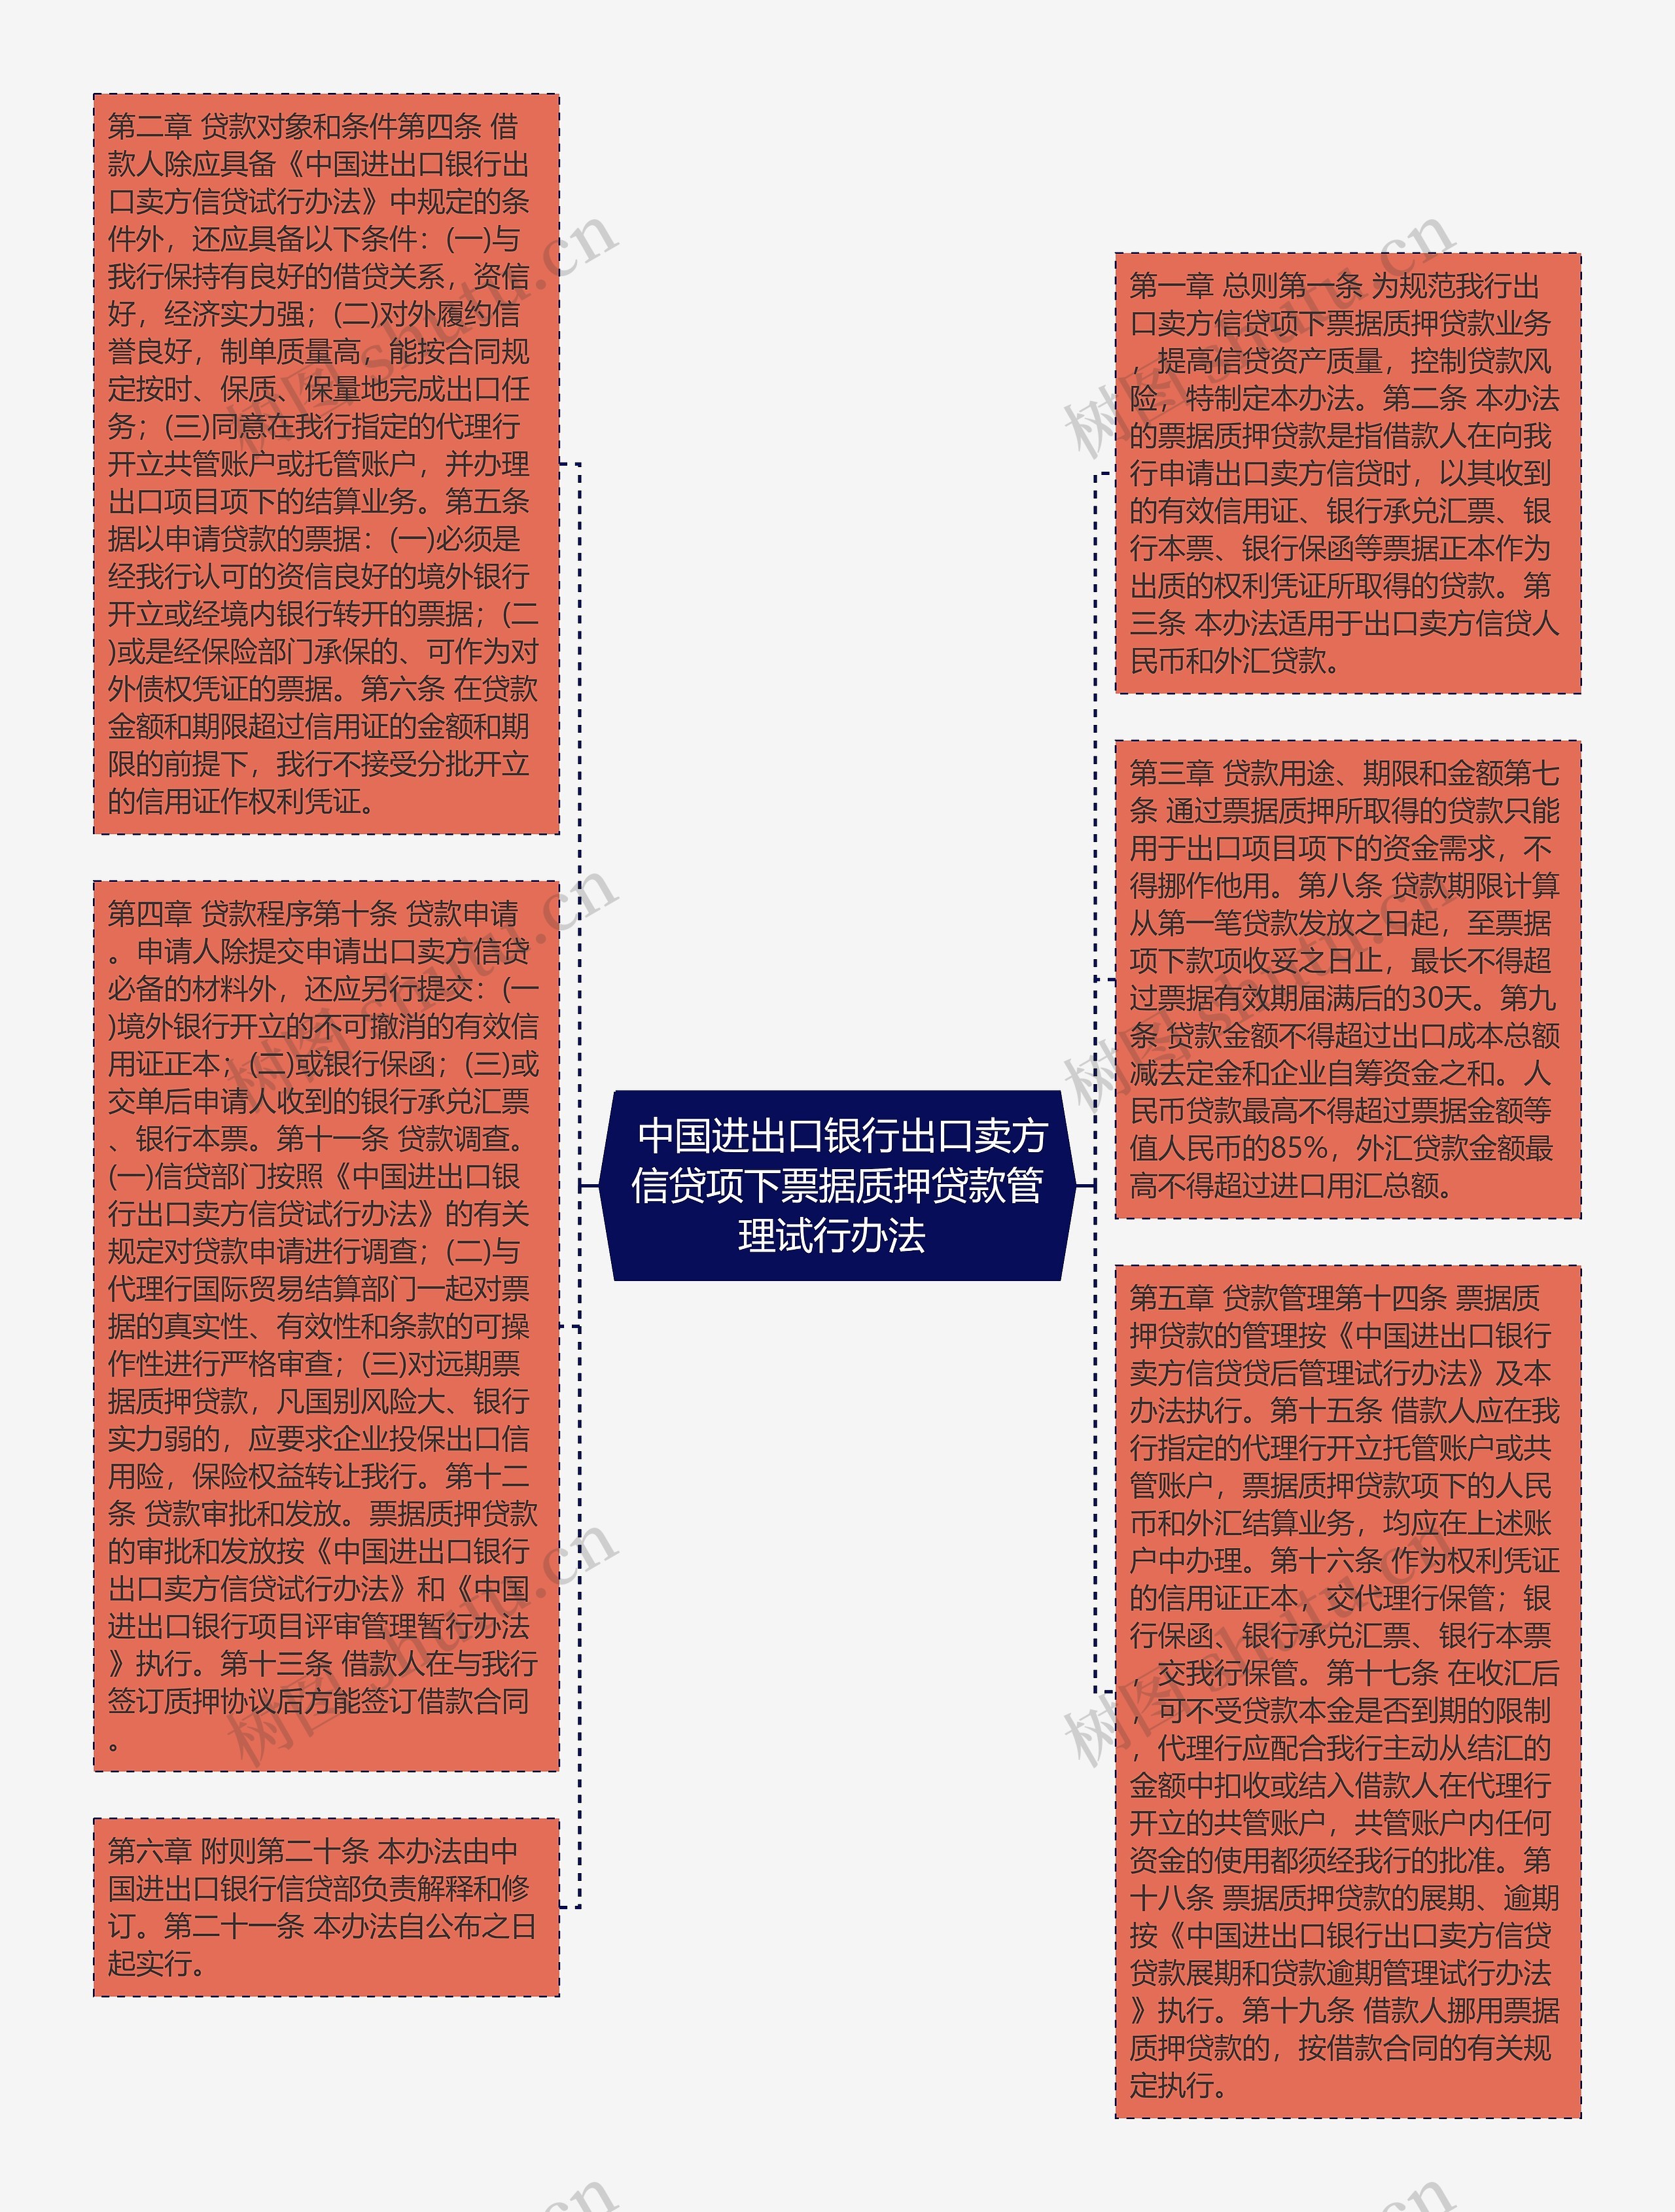  中国进出口银行出口卖方信贷项下票据质押贷款管理试行办法 思维导图